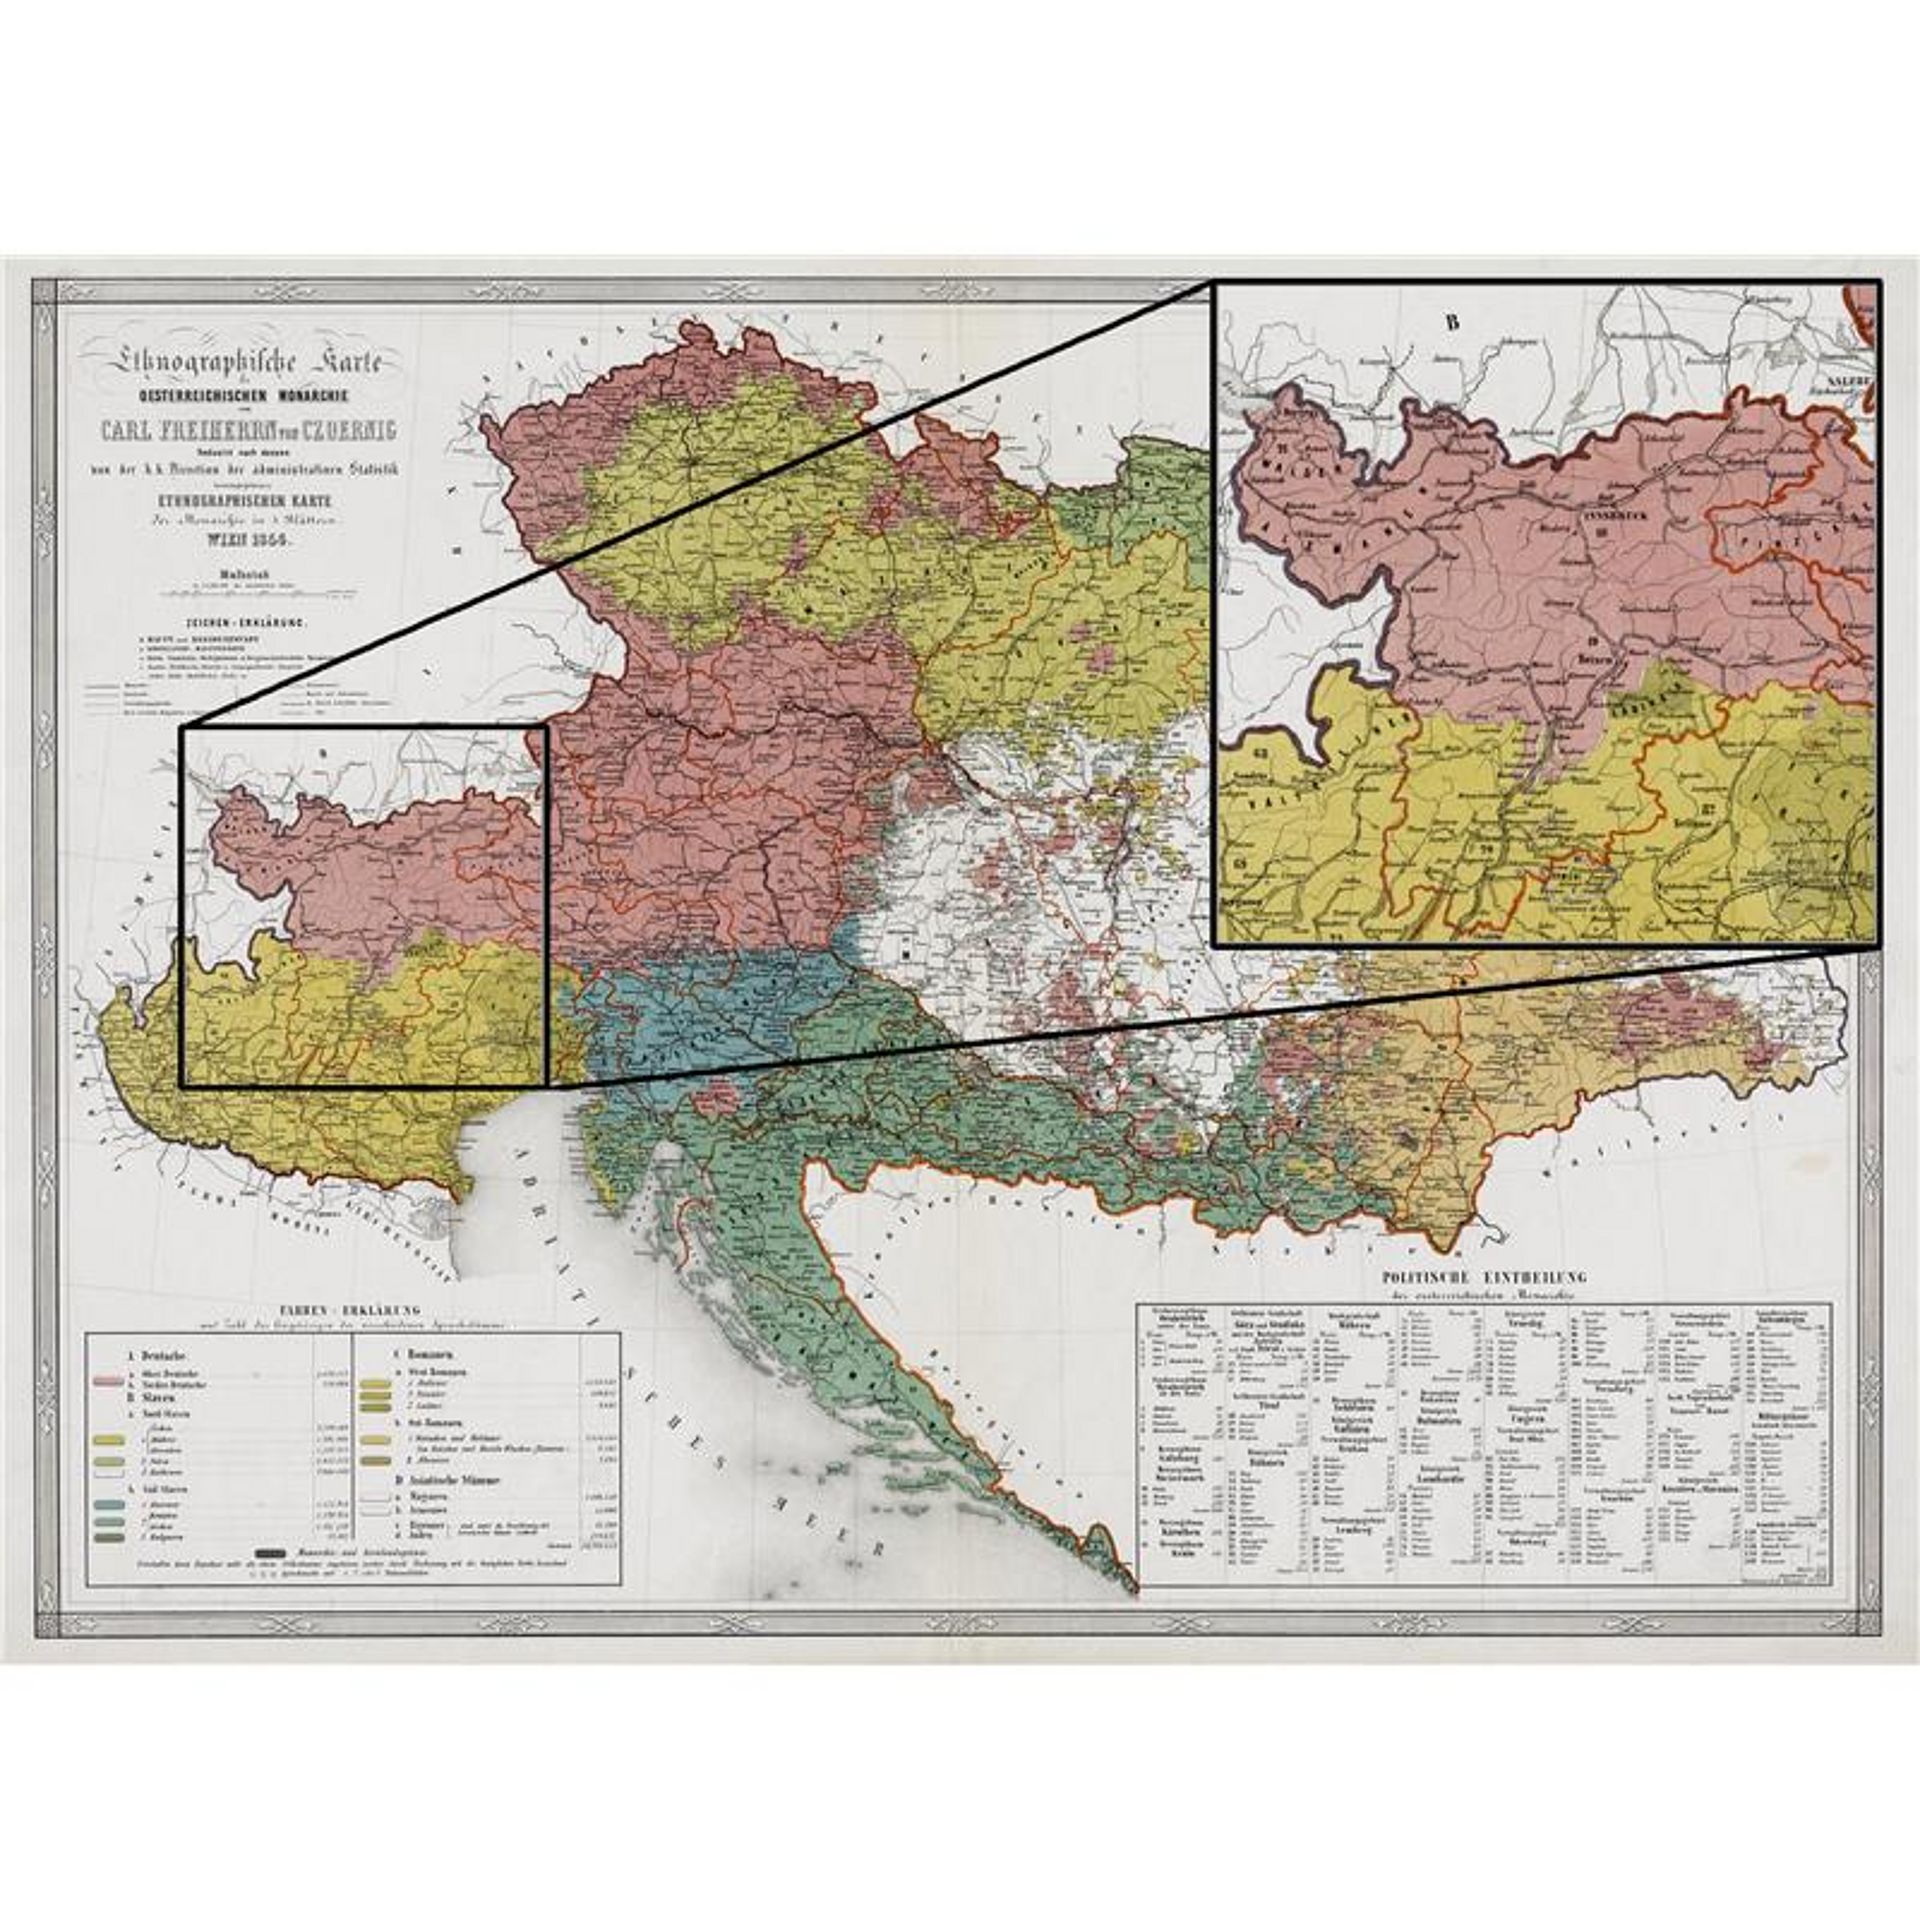 Una mappa con le etnie della monarchia asburgica.